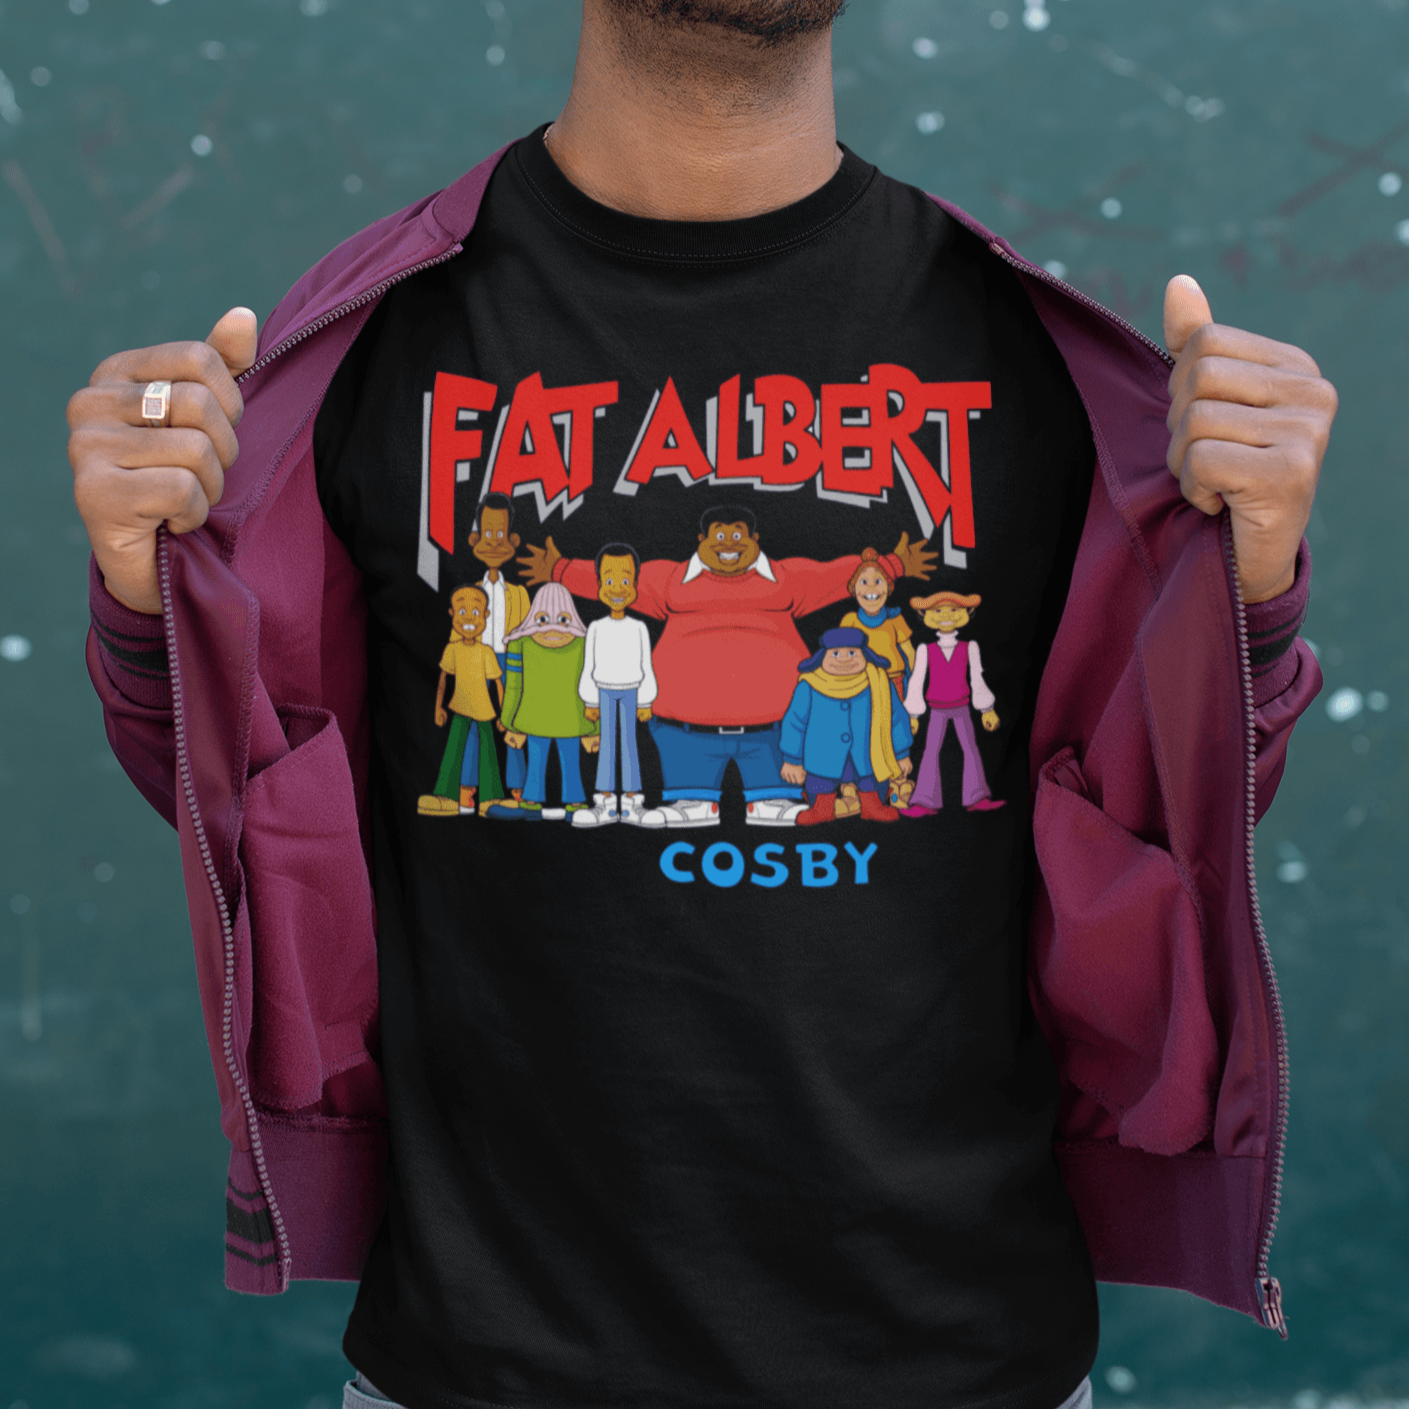 Fat Albert T-shirt 70's Cartoon Series Short Sleeve Top - TopKoalaTee